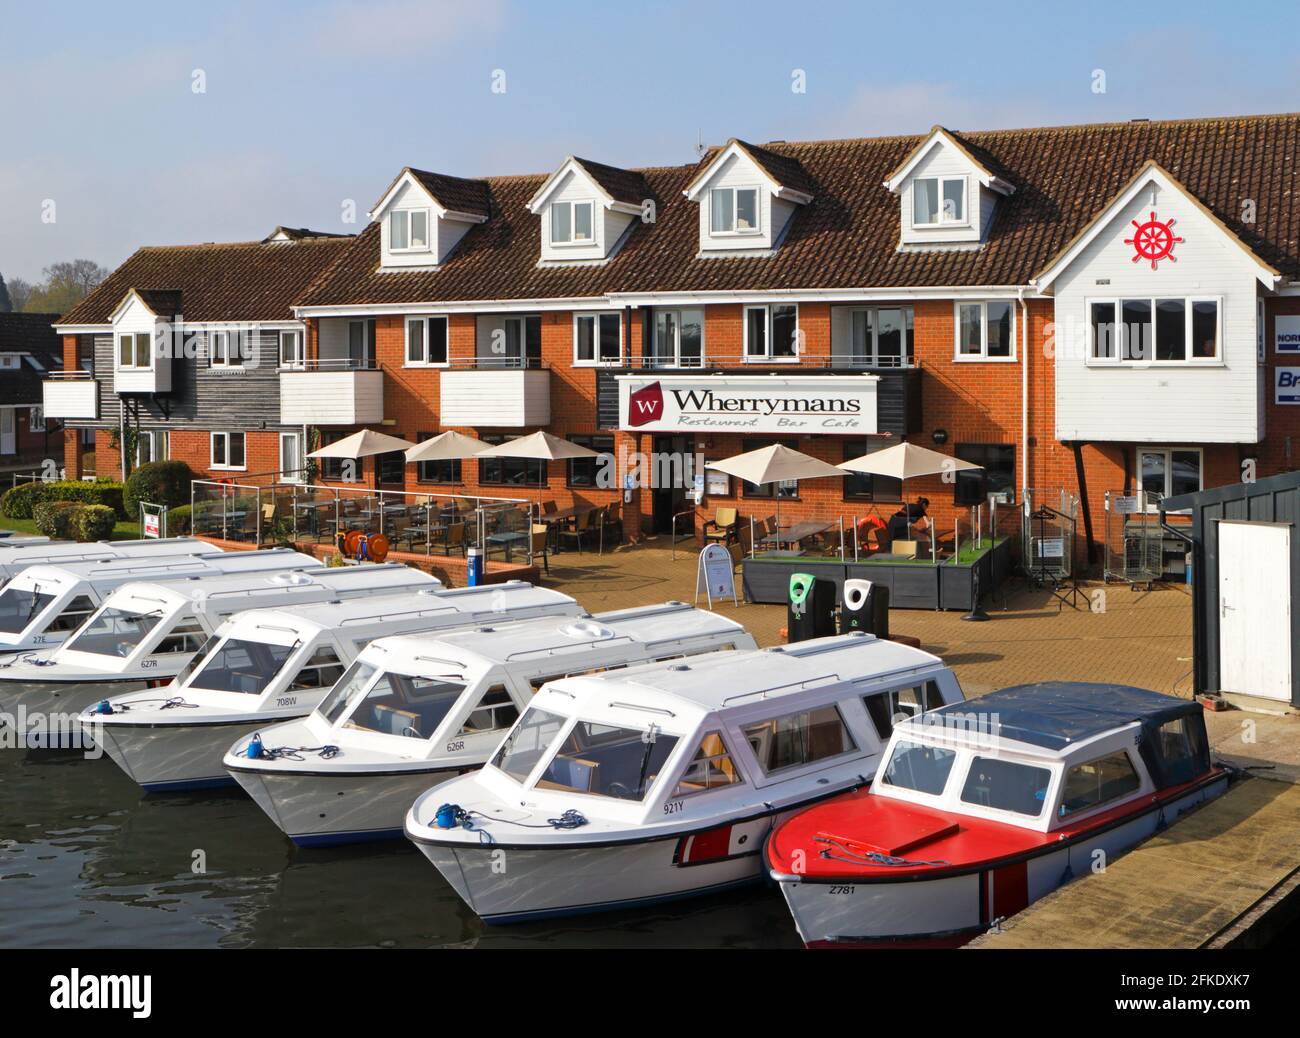 Das Wherrymans Restaurant und Café mit Sitzplätzen im Freien und Tagesausleihbooten, die an der Brücke auf dem Fluss Bure in Wroxham, Norfolk, England, Großbritannien, festgemacht sind. Stockfoto